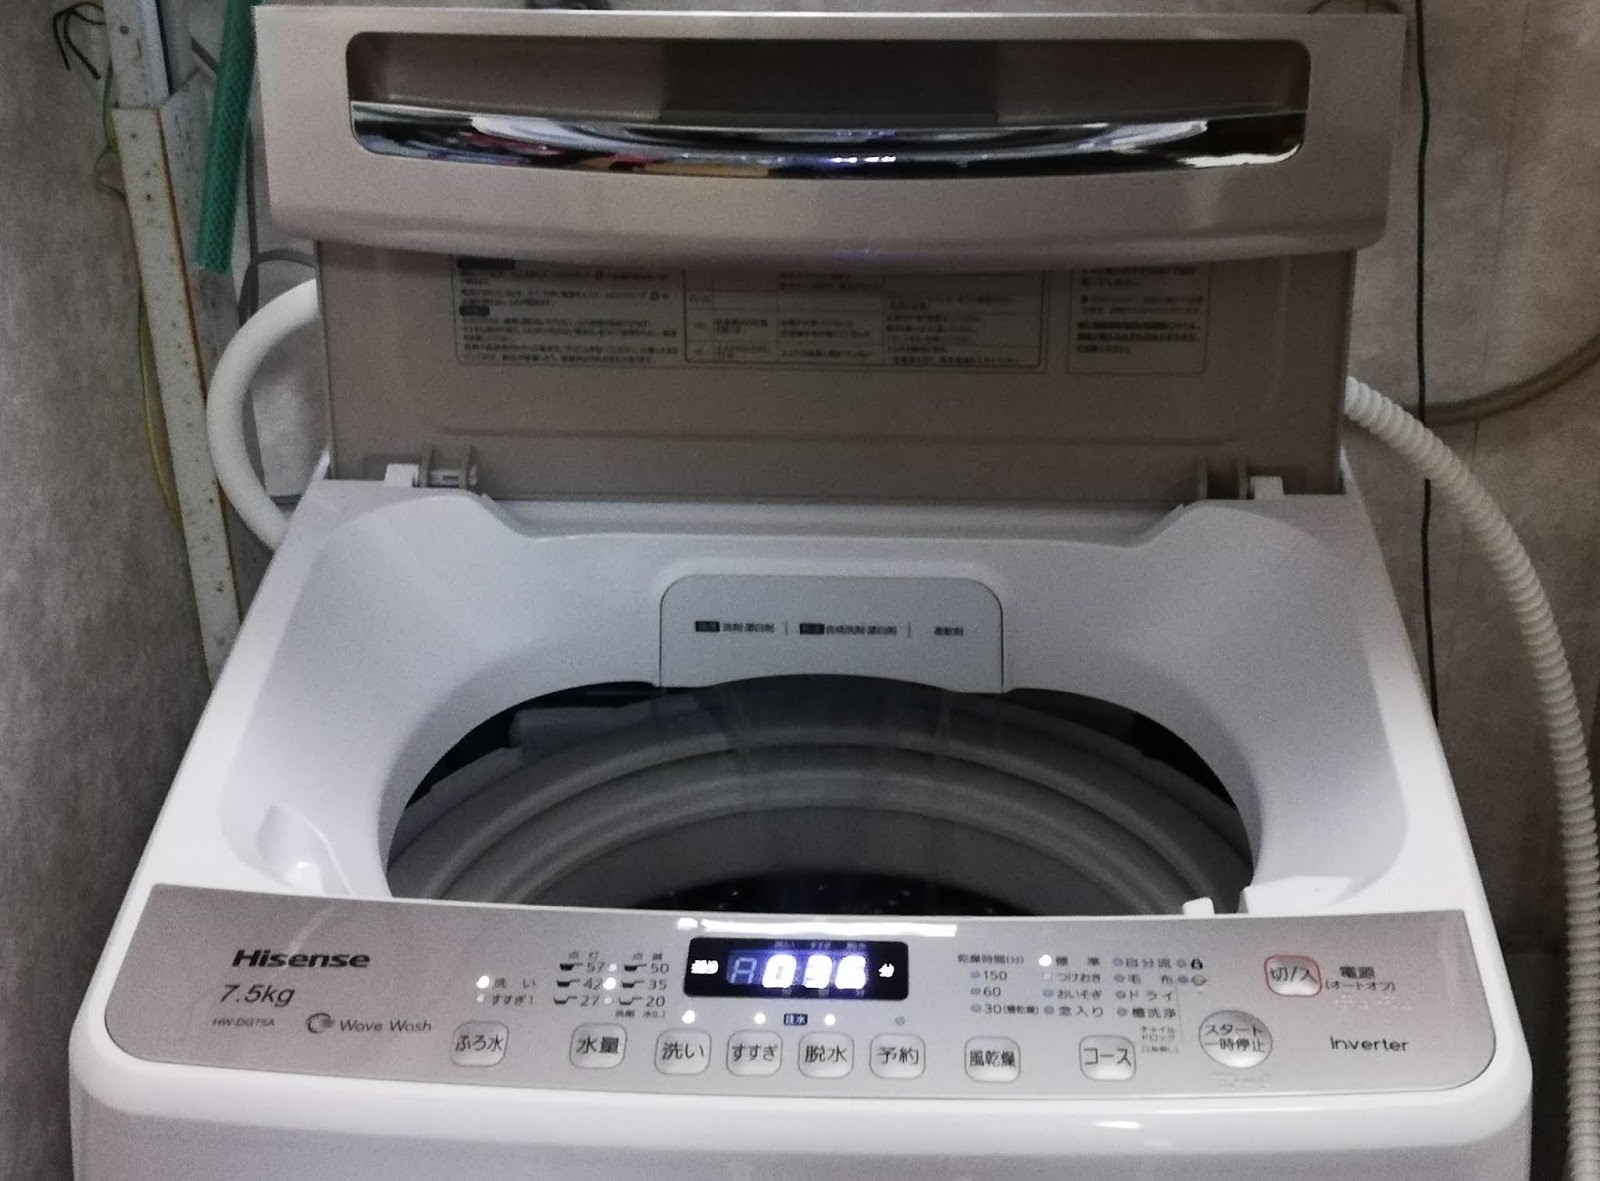 洗濯機が壊れたので、値段の安い「ハイセンス インバーター制御付き 全自動洗濯機 7.5kg ホワイト HW-DG75A」を購入、そして2年後